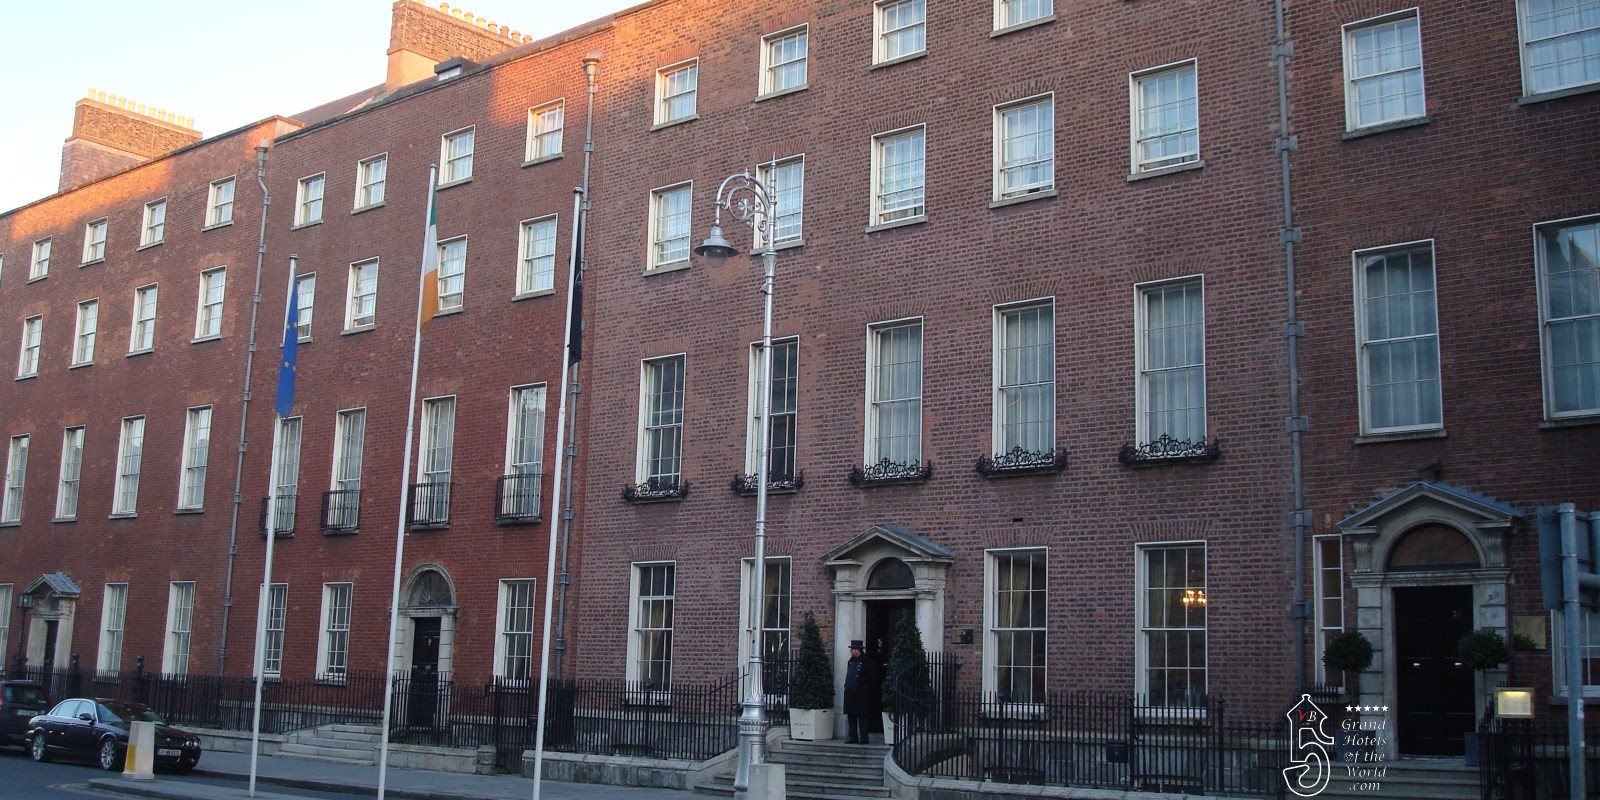 Hotel the Merrion in Dublin